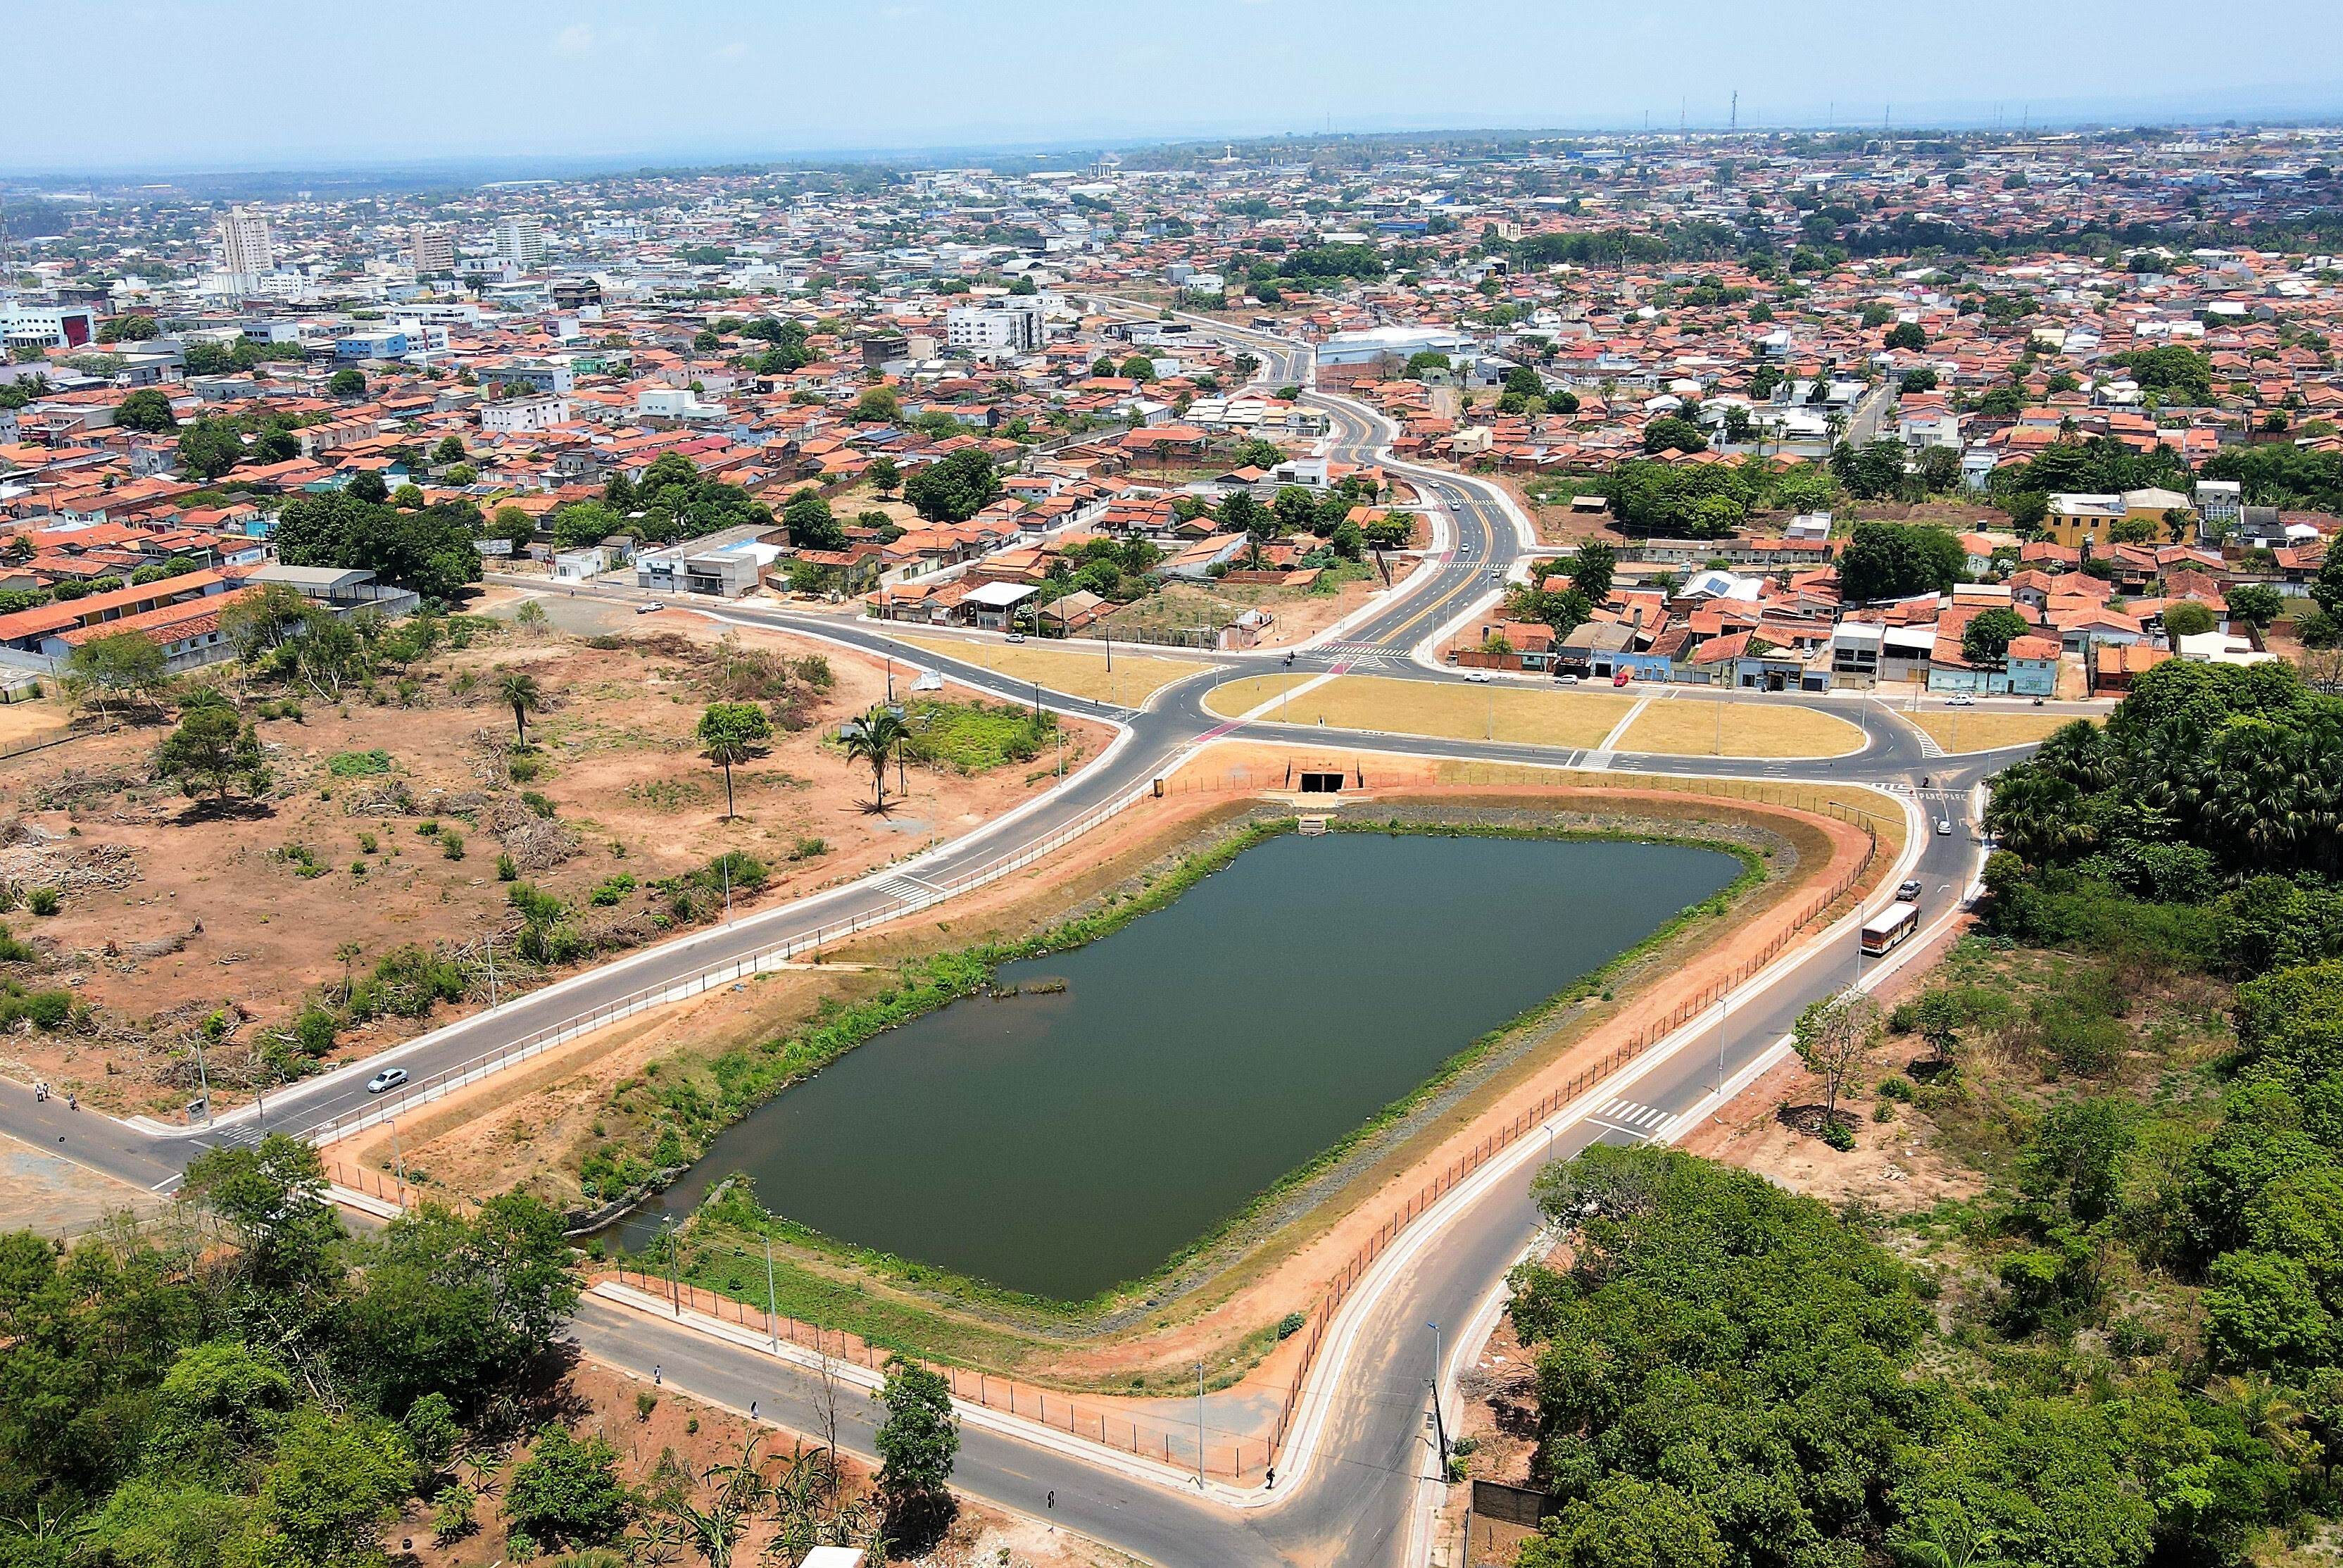  Assim como a bacia de detenção do Parque Cimba, em um dos extremos da Via Norte, o projeto Águas de Araguaína prevê a construção de mais três bacias